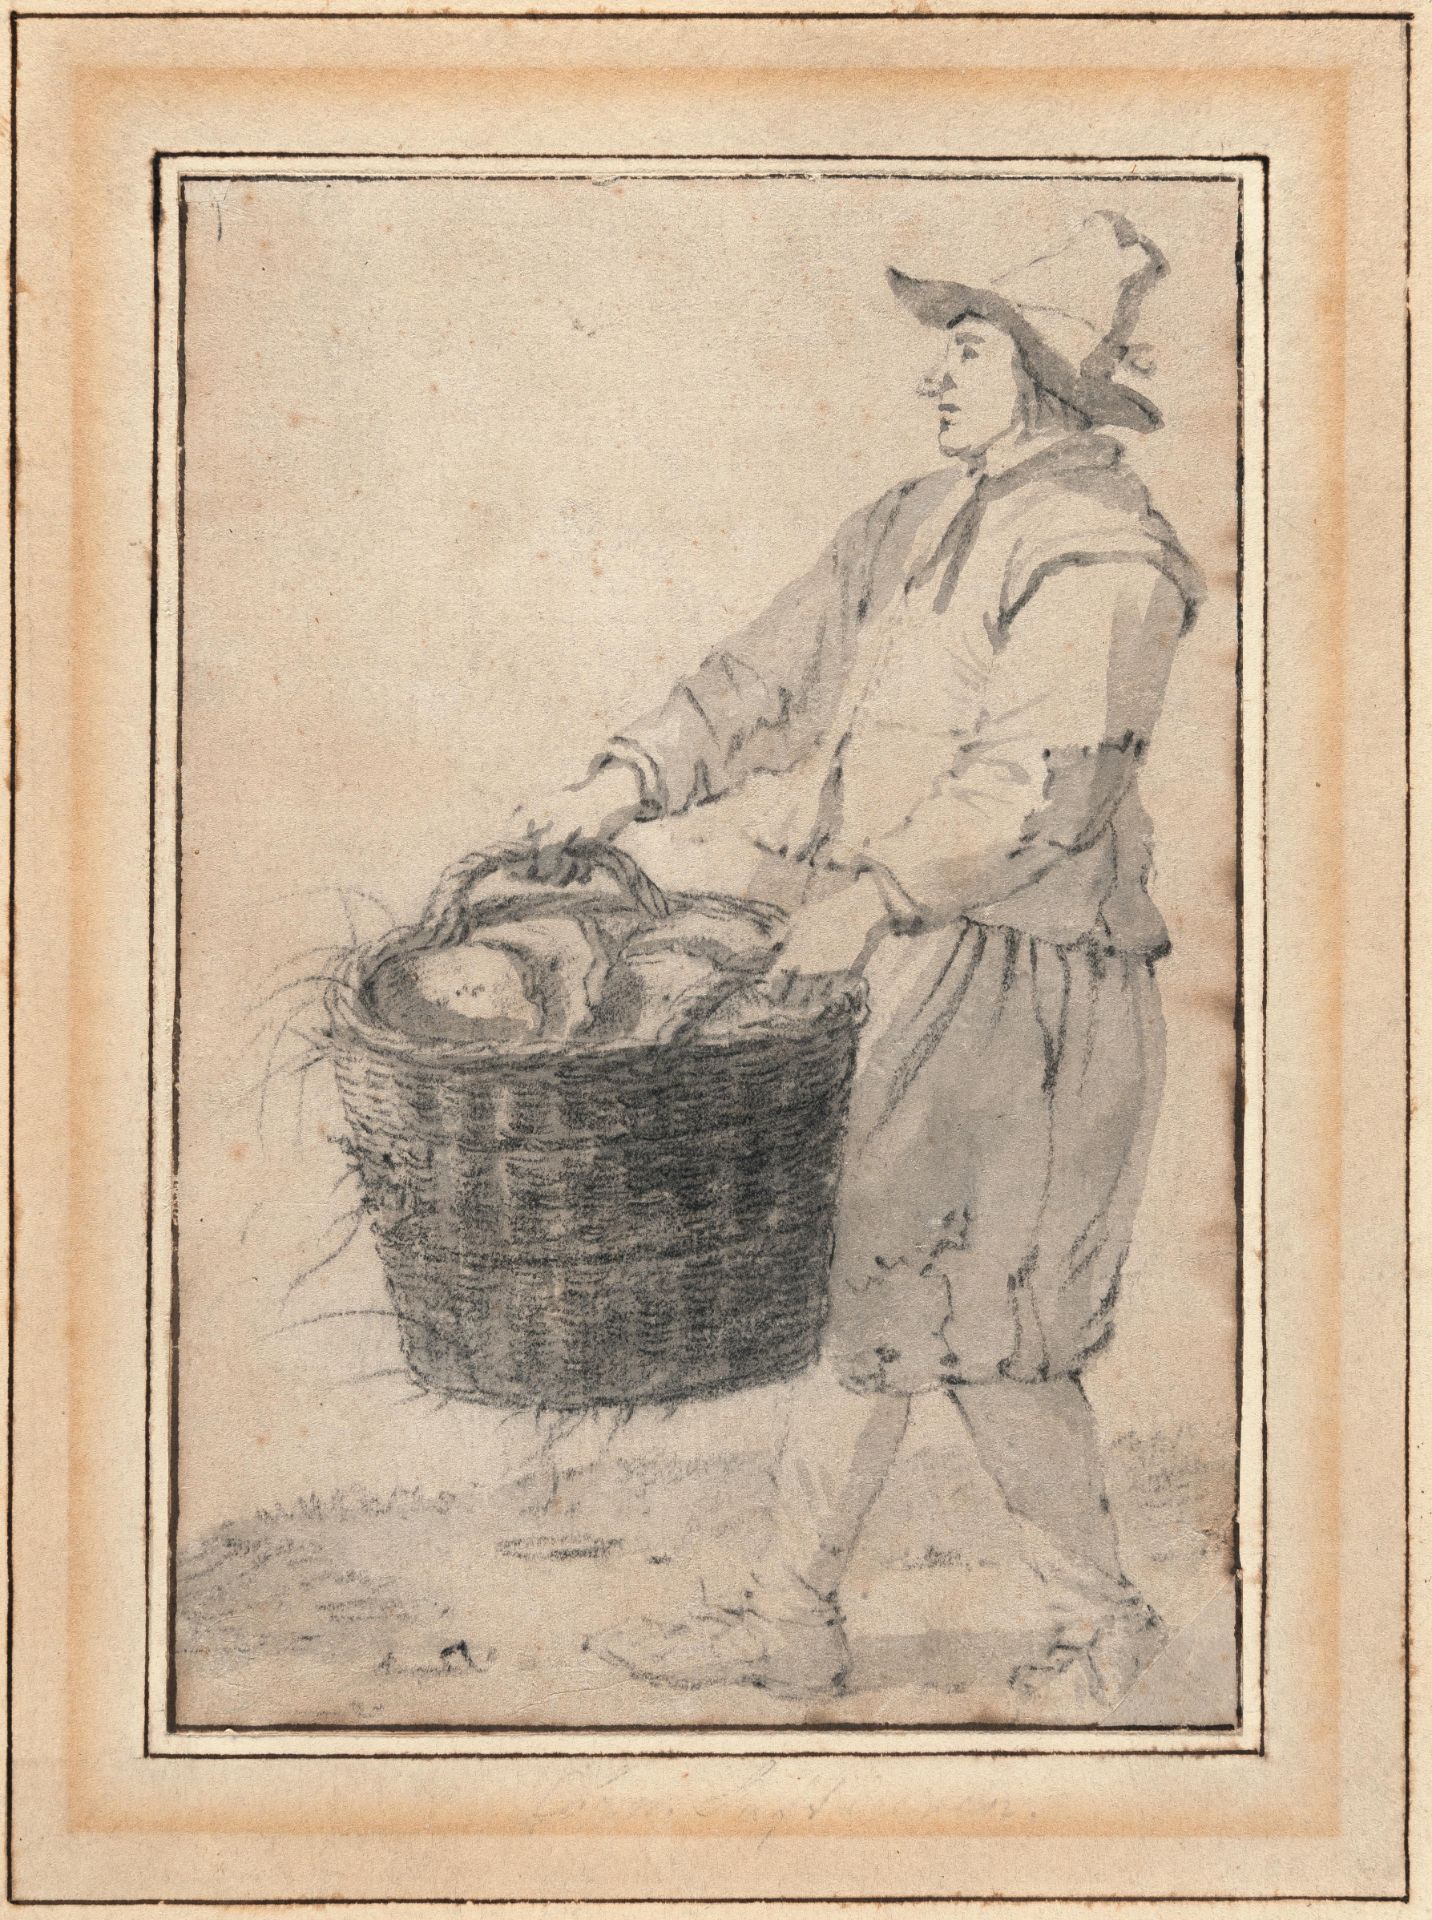 Niederländisch – Mann im Profil, einen Korb mit Broten tragend